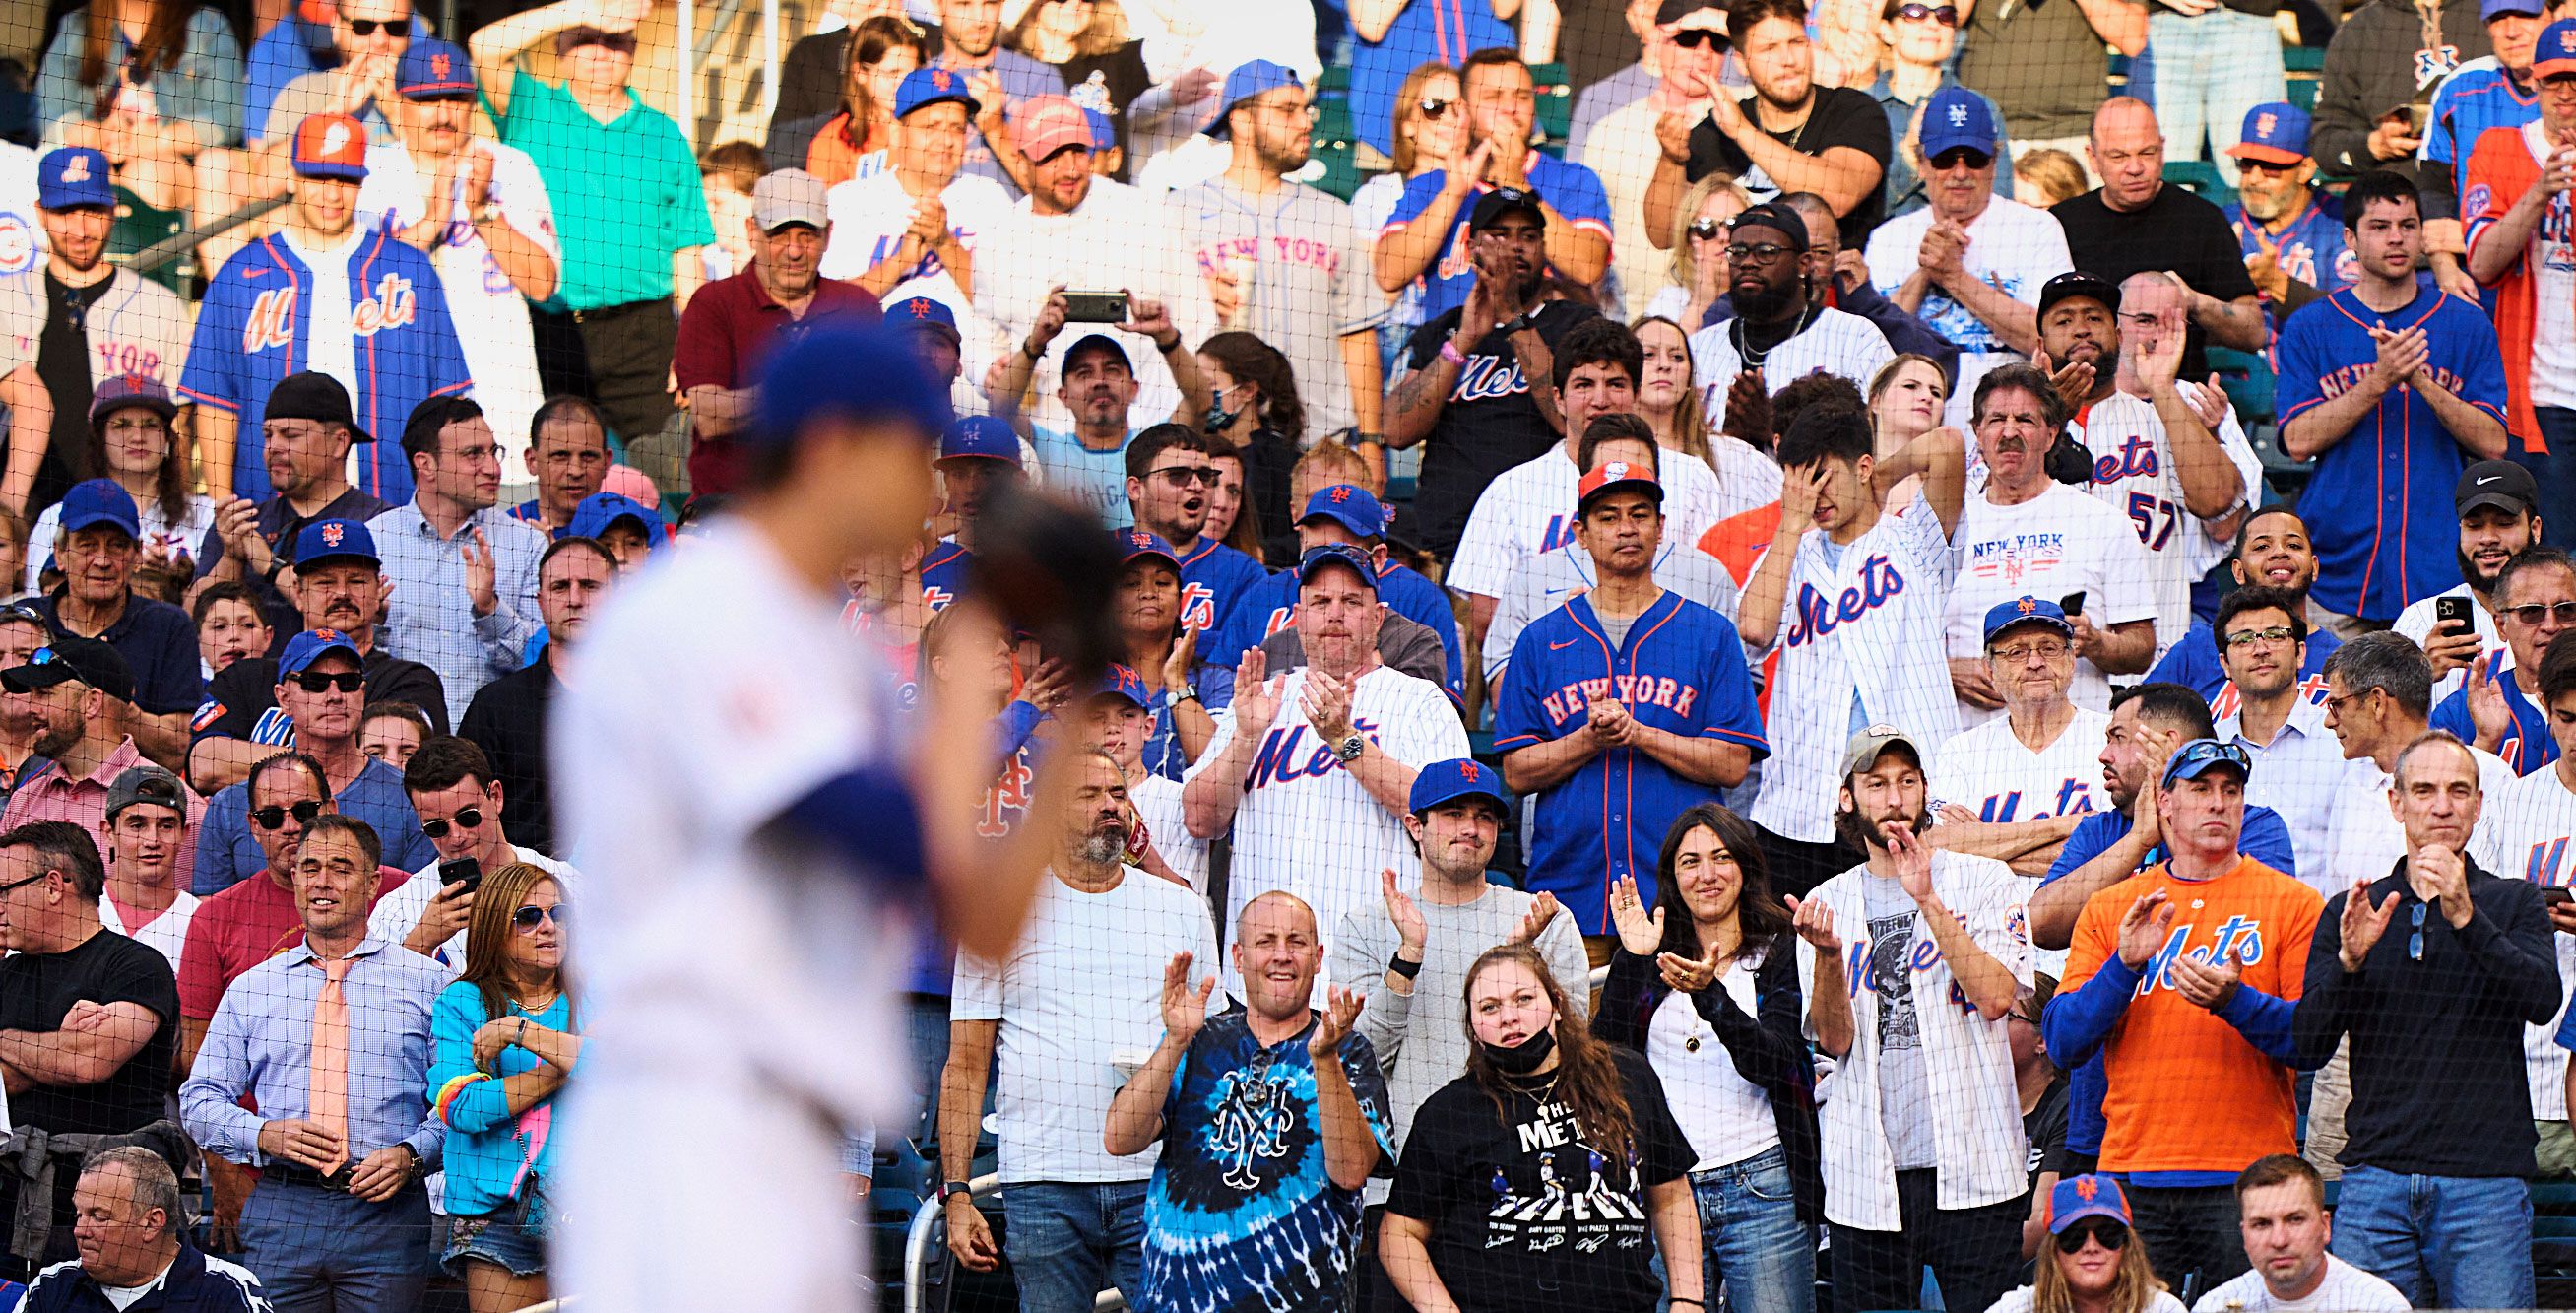 Yankees Fans vs Mets Fans – Meet The Matts